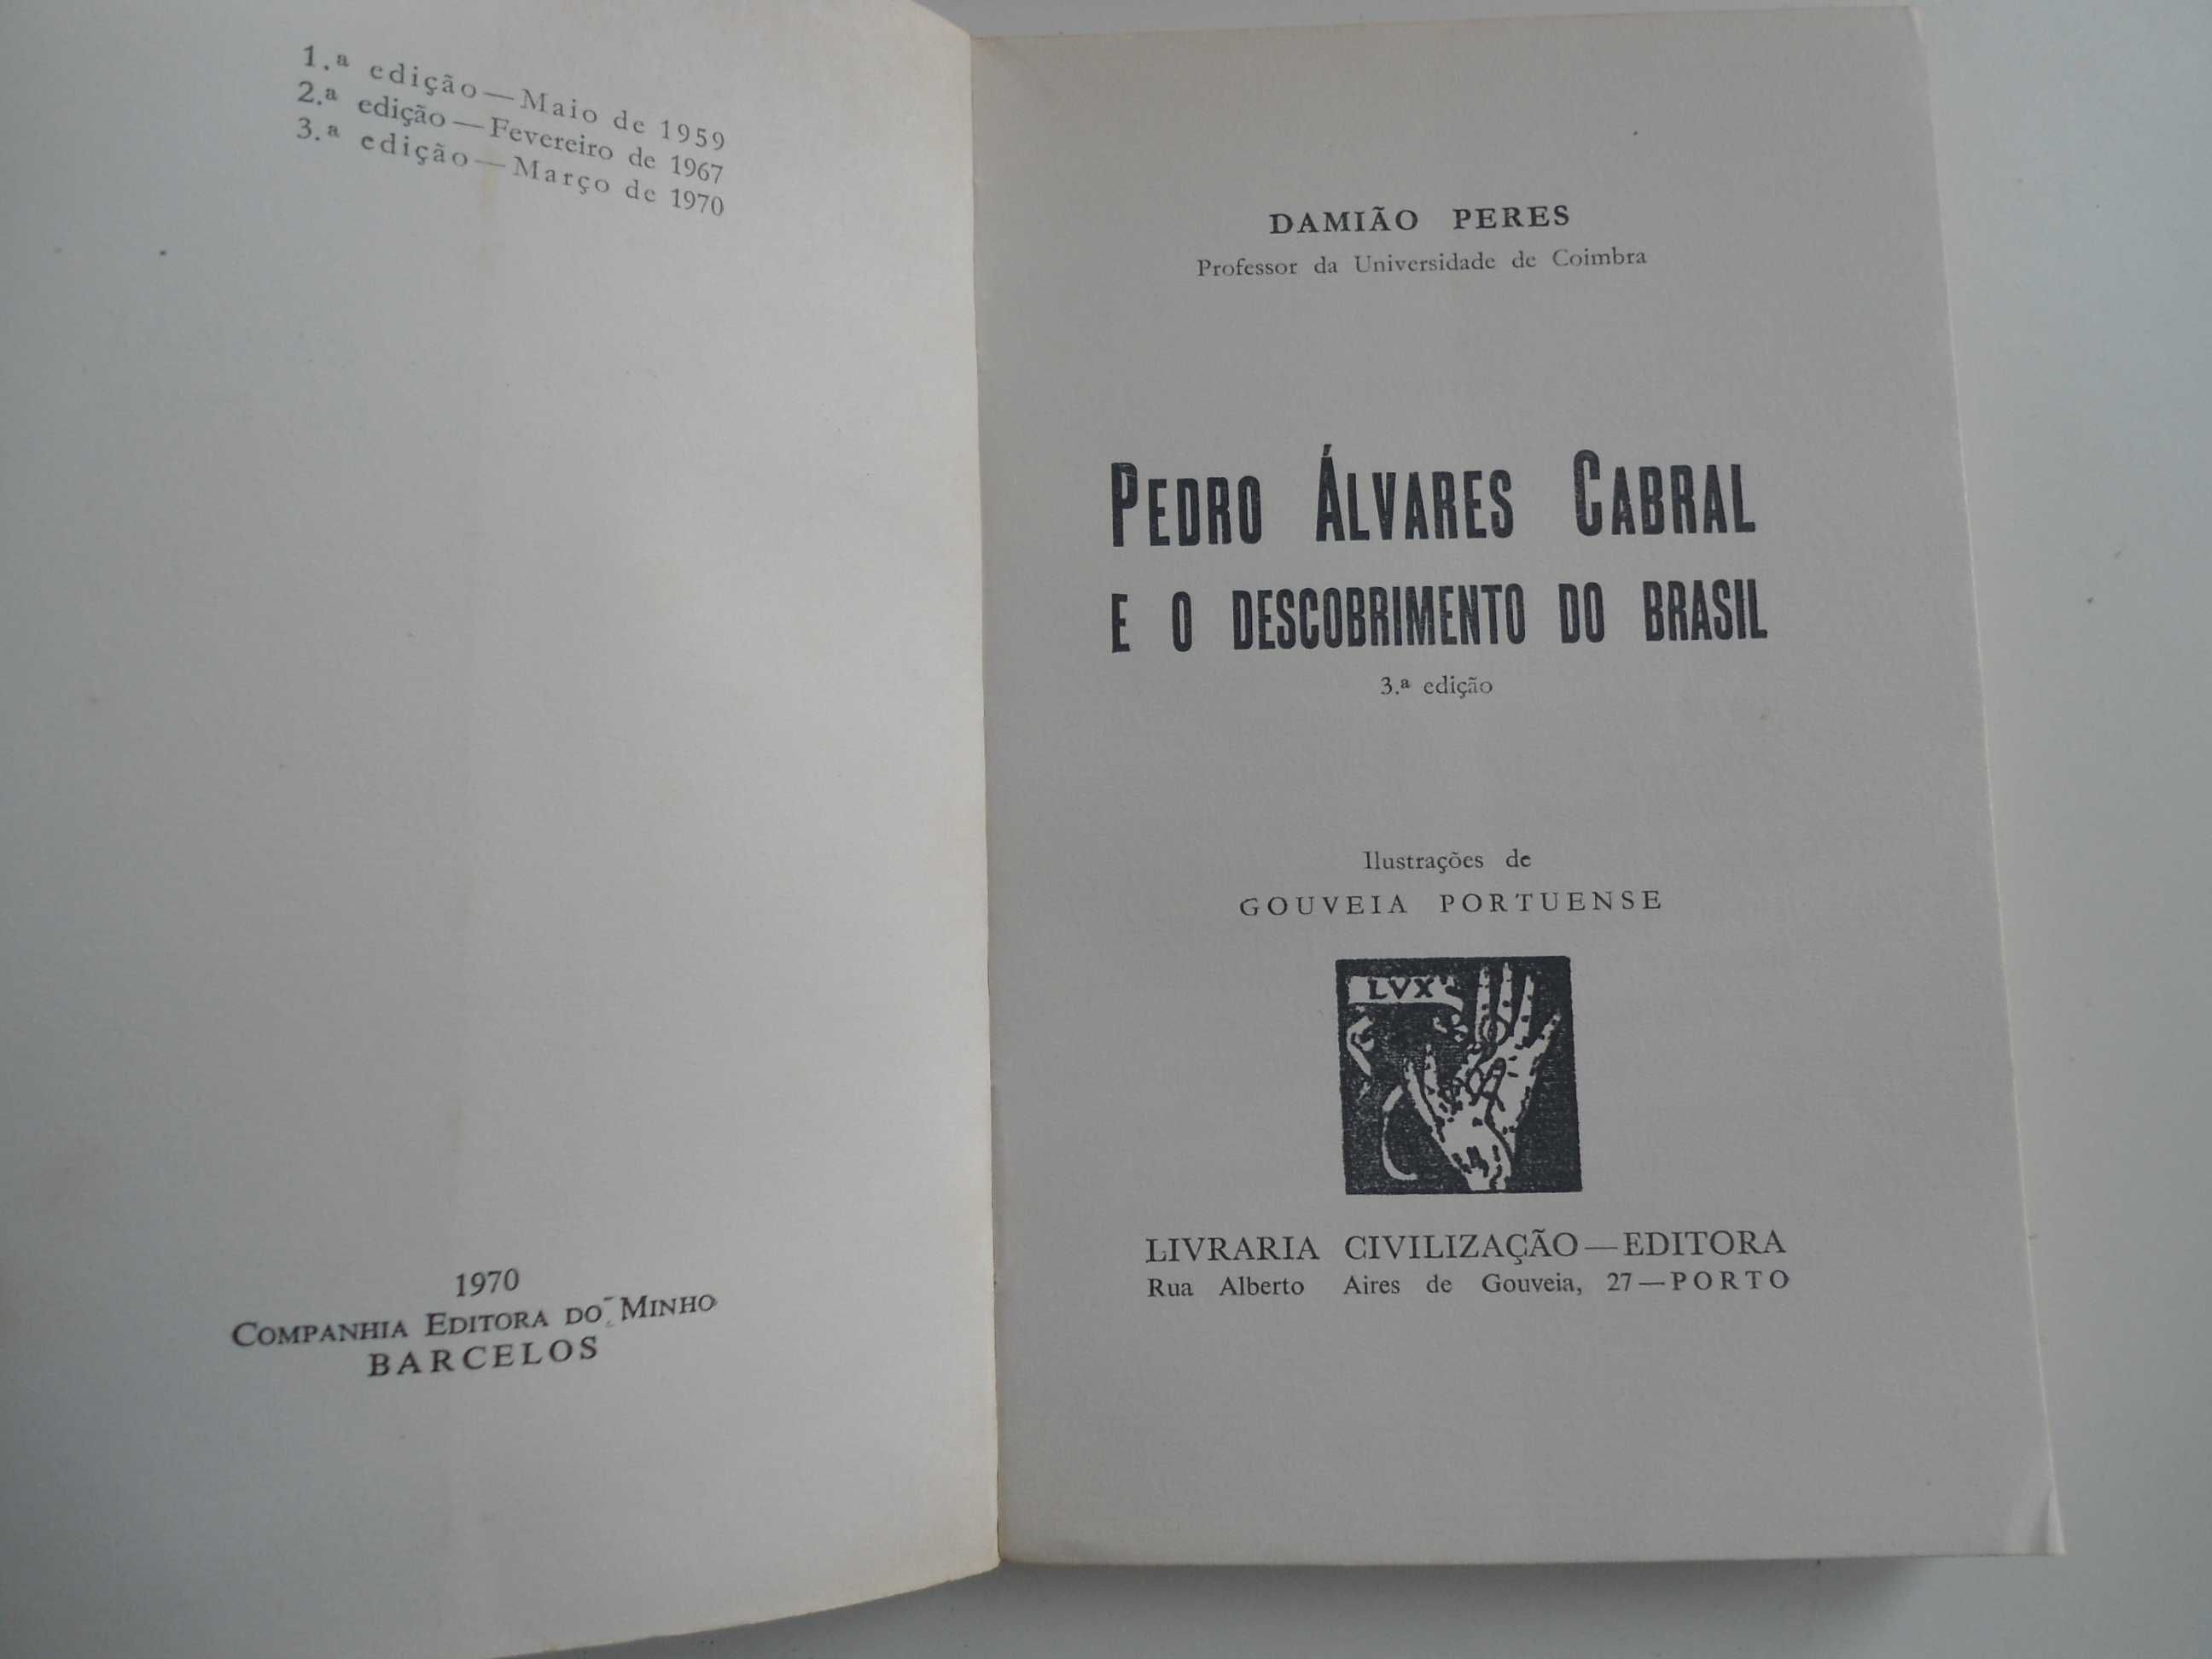 Pedro Álvares Cabral e o descobrimento do Brasil de Damião Peres